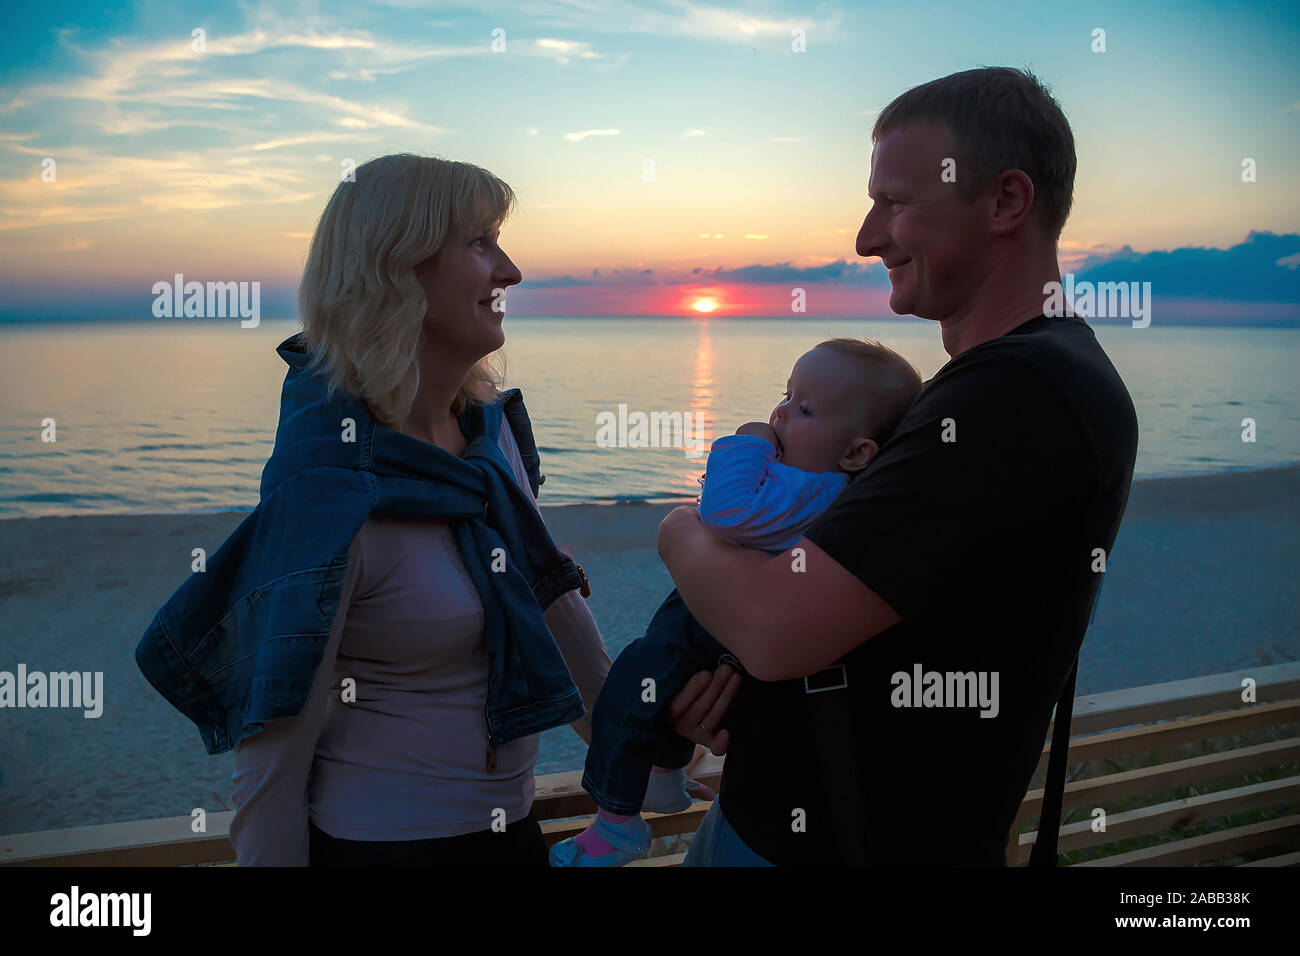 Famille avec un jeune enfant sur les rives de la mer Baltique en regardant le coucher du soleil. Banque D'Images